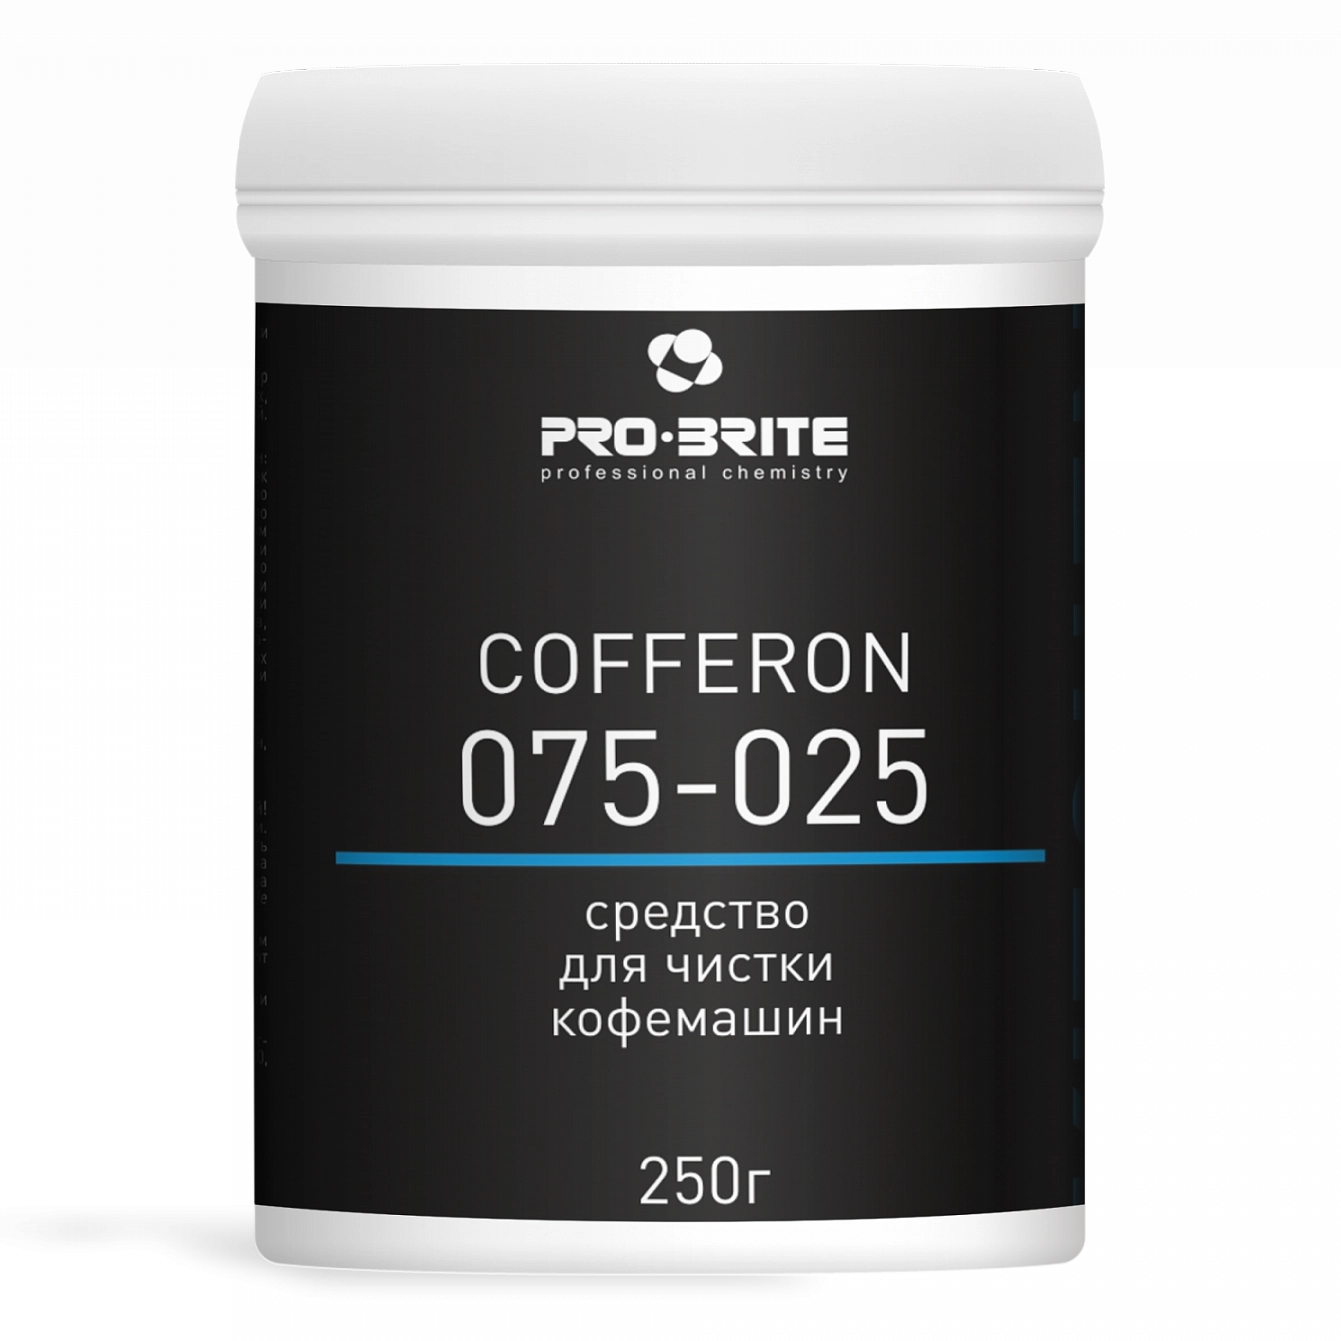 Чистящее средство для кофемашин и кофеварок 250 г, PRO-BRITE COFFERON, порошок, 075-025